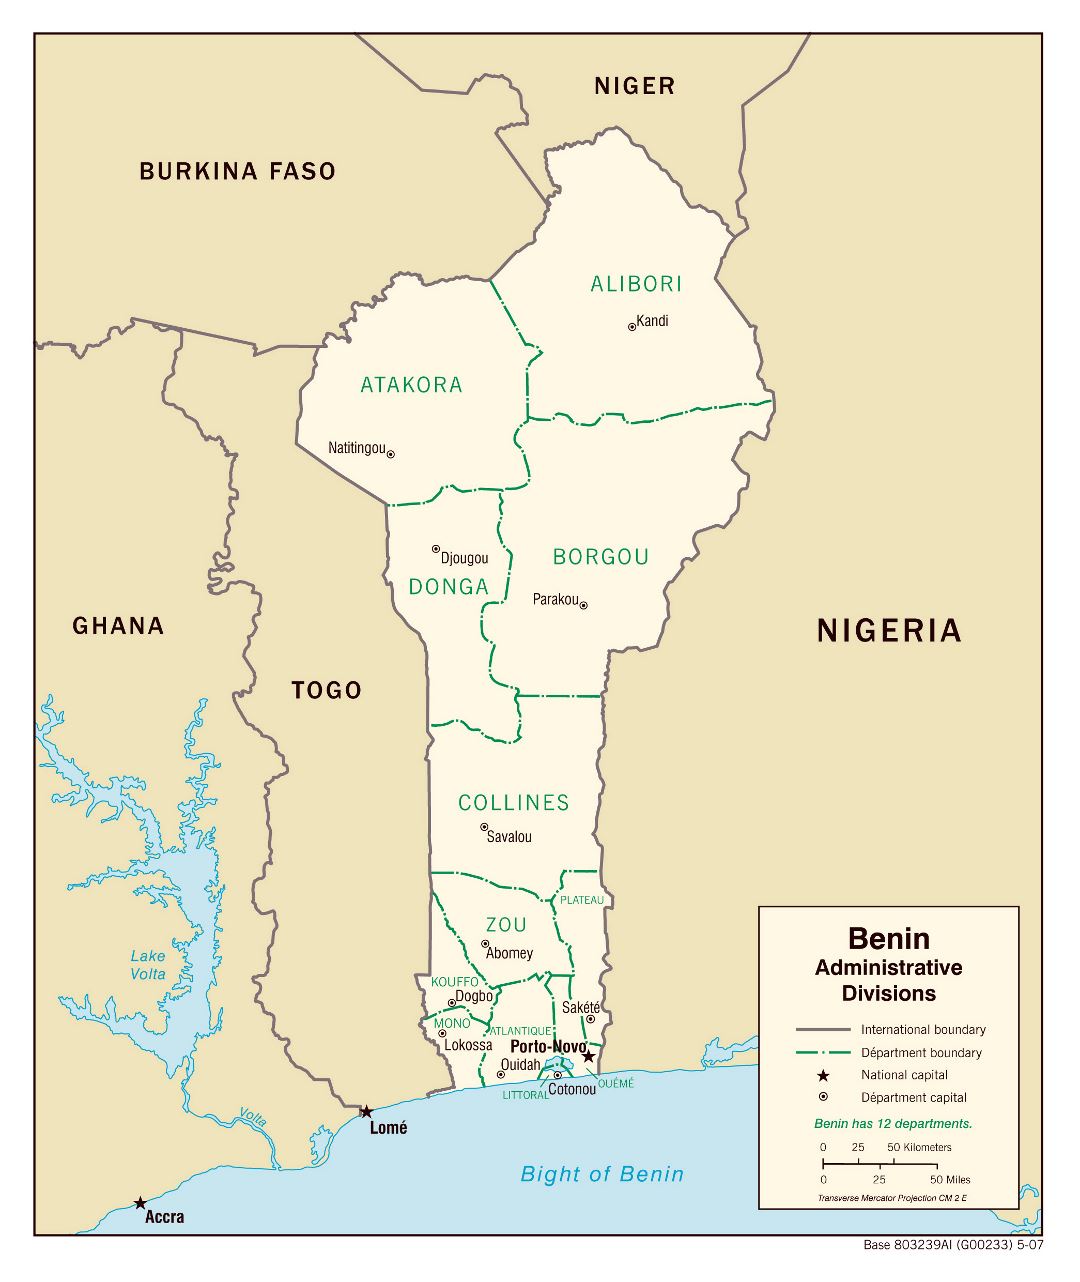 Grande detallado mapa de administrativas divisiones de Benin - 2007